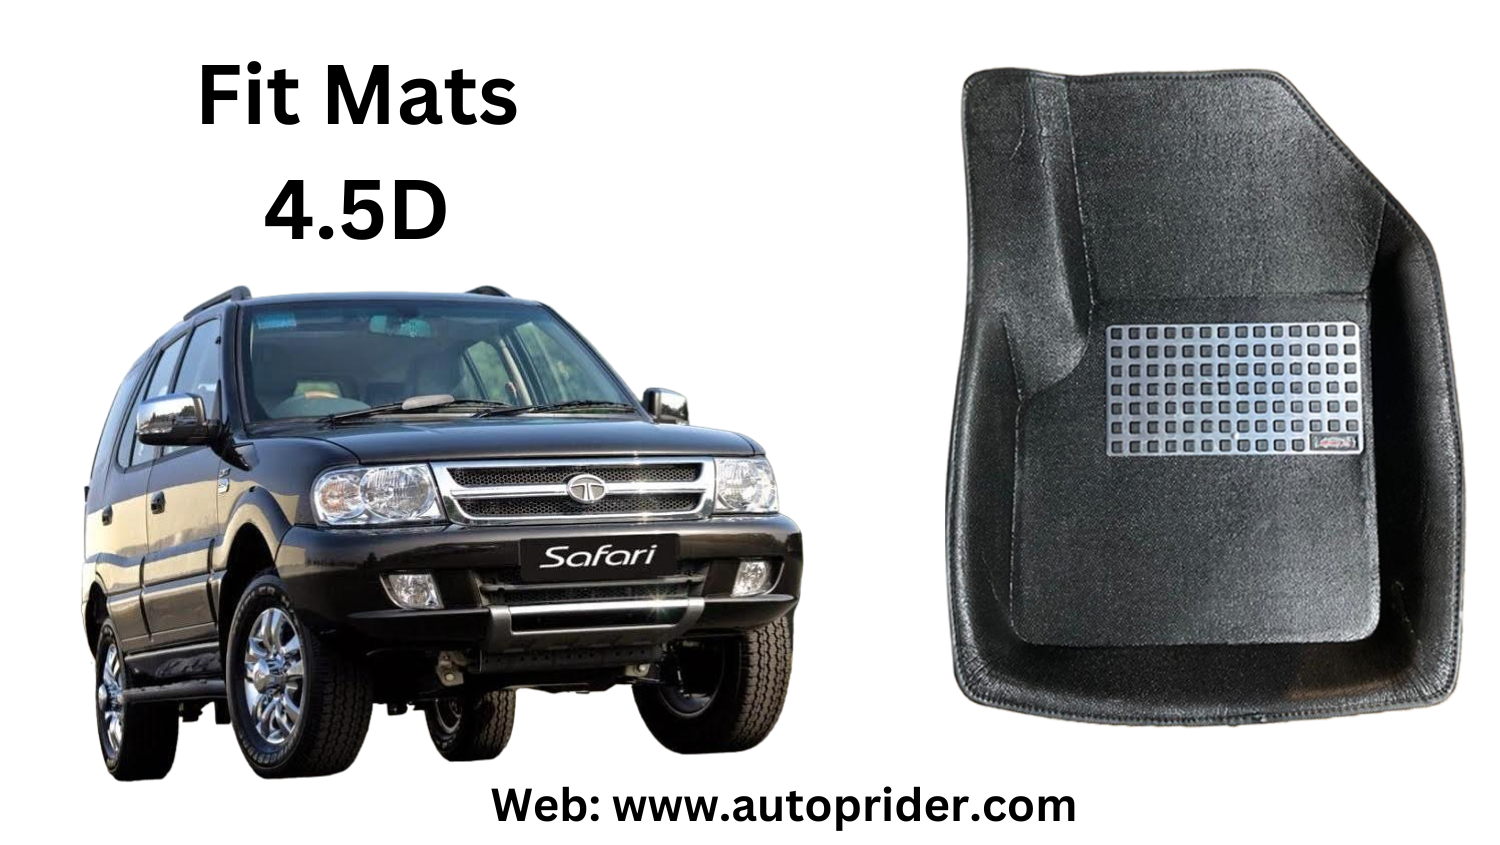 Autoprider | Fit Mats 4.5D Economy Car Mats for Tata Safari